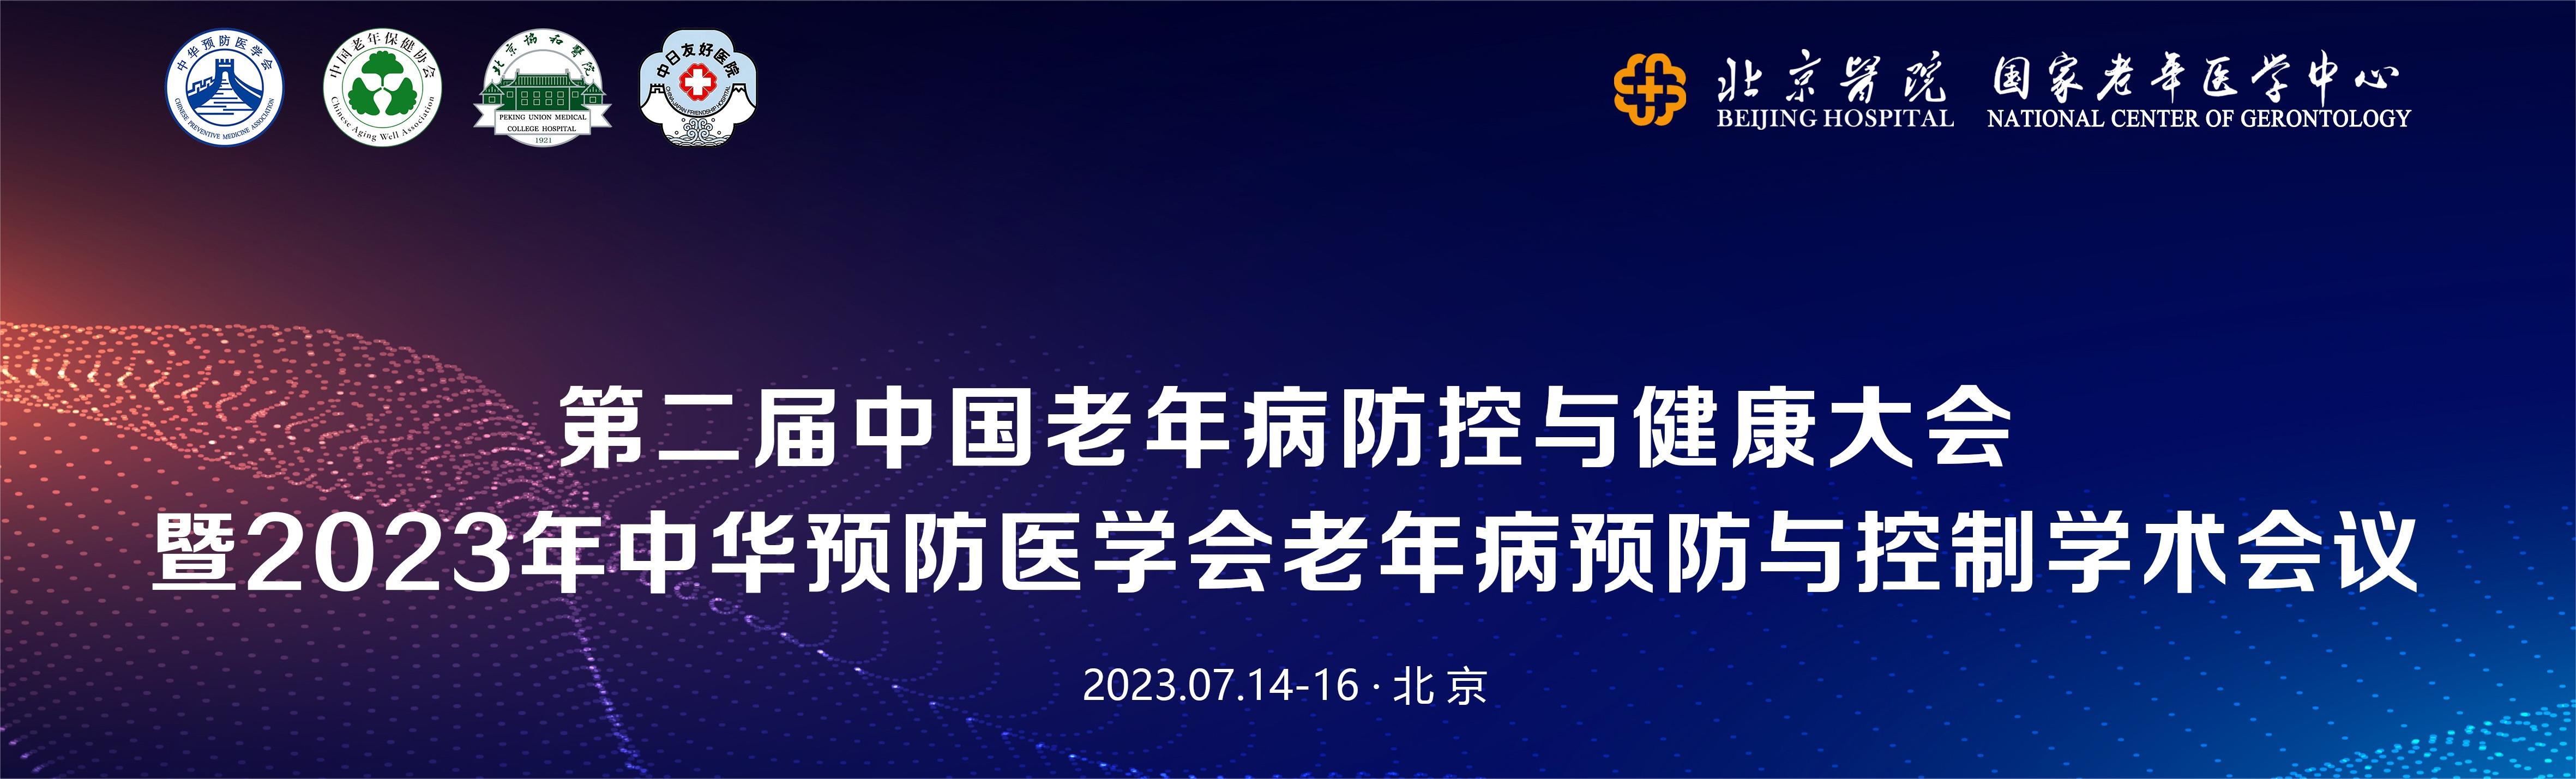 第二届中国老年病防控与健康大会